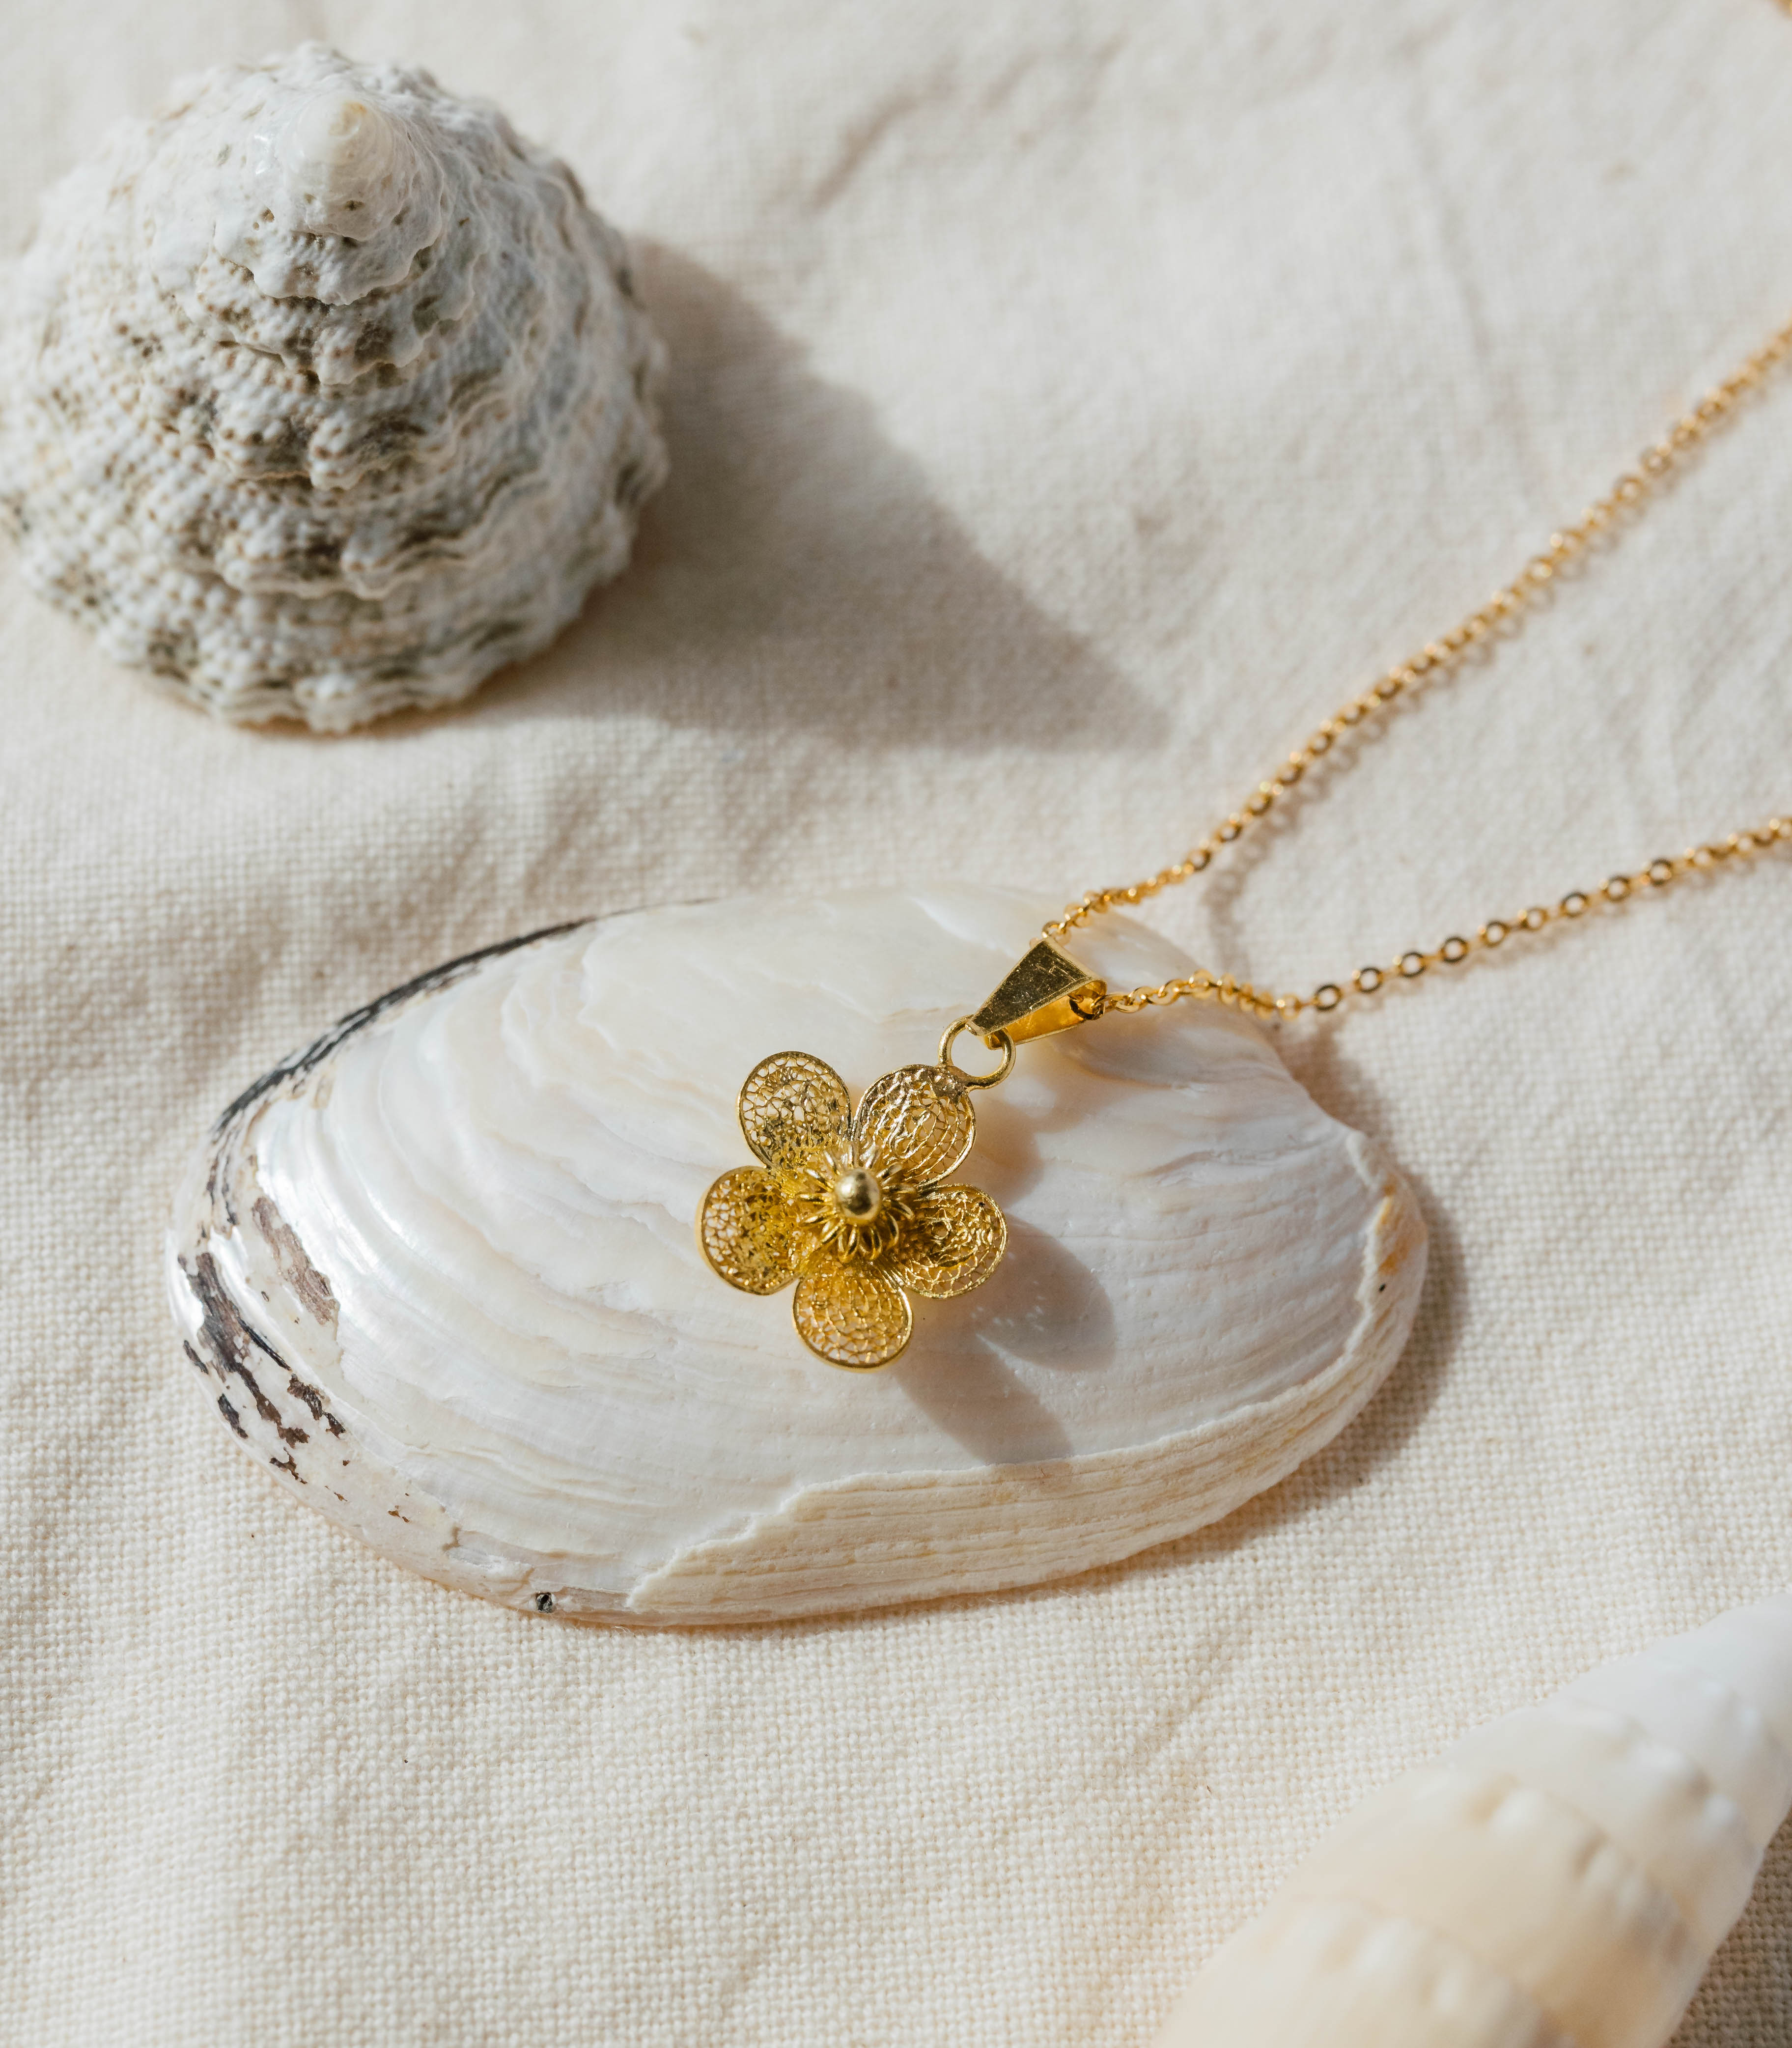 Sampaguita Minimalist Pendant Necklace in Gold - AMAMI